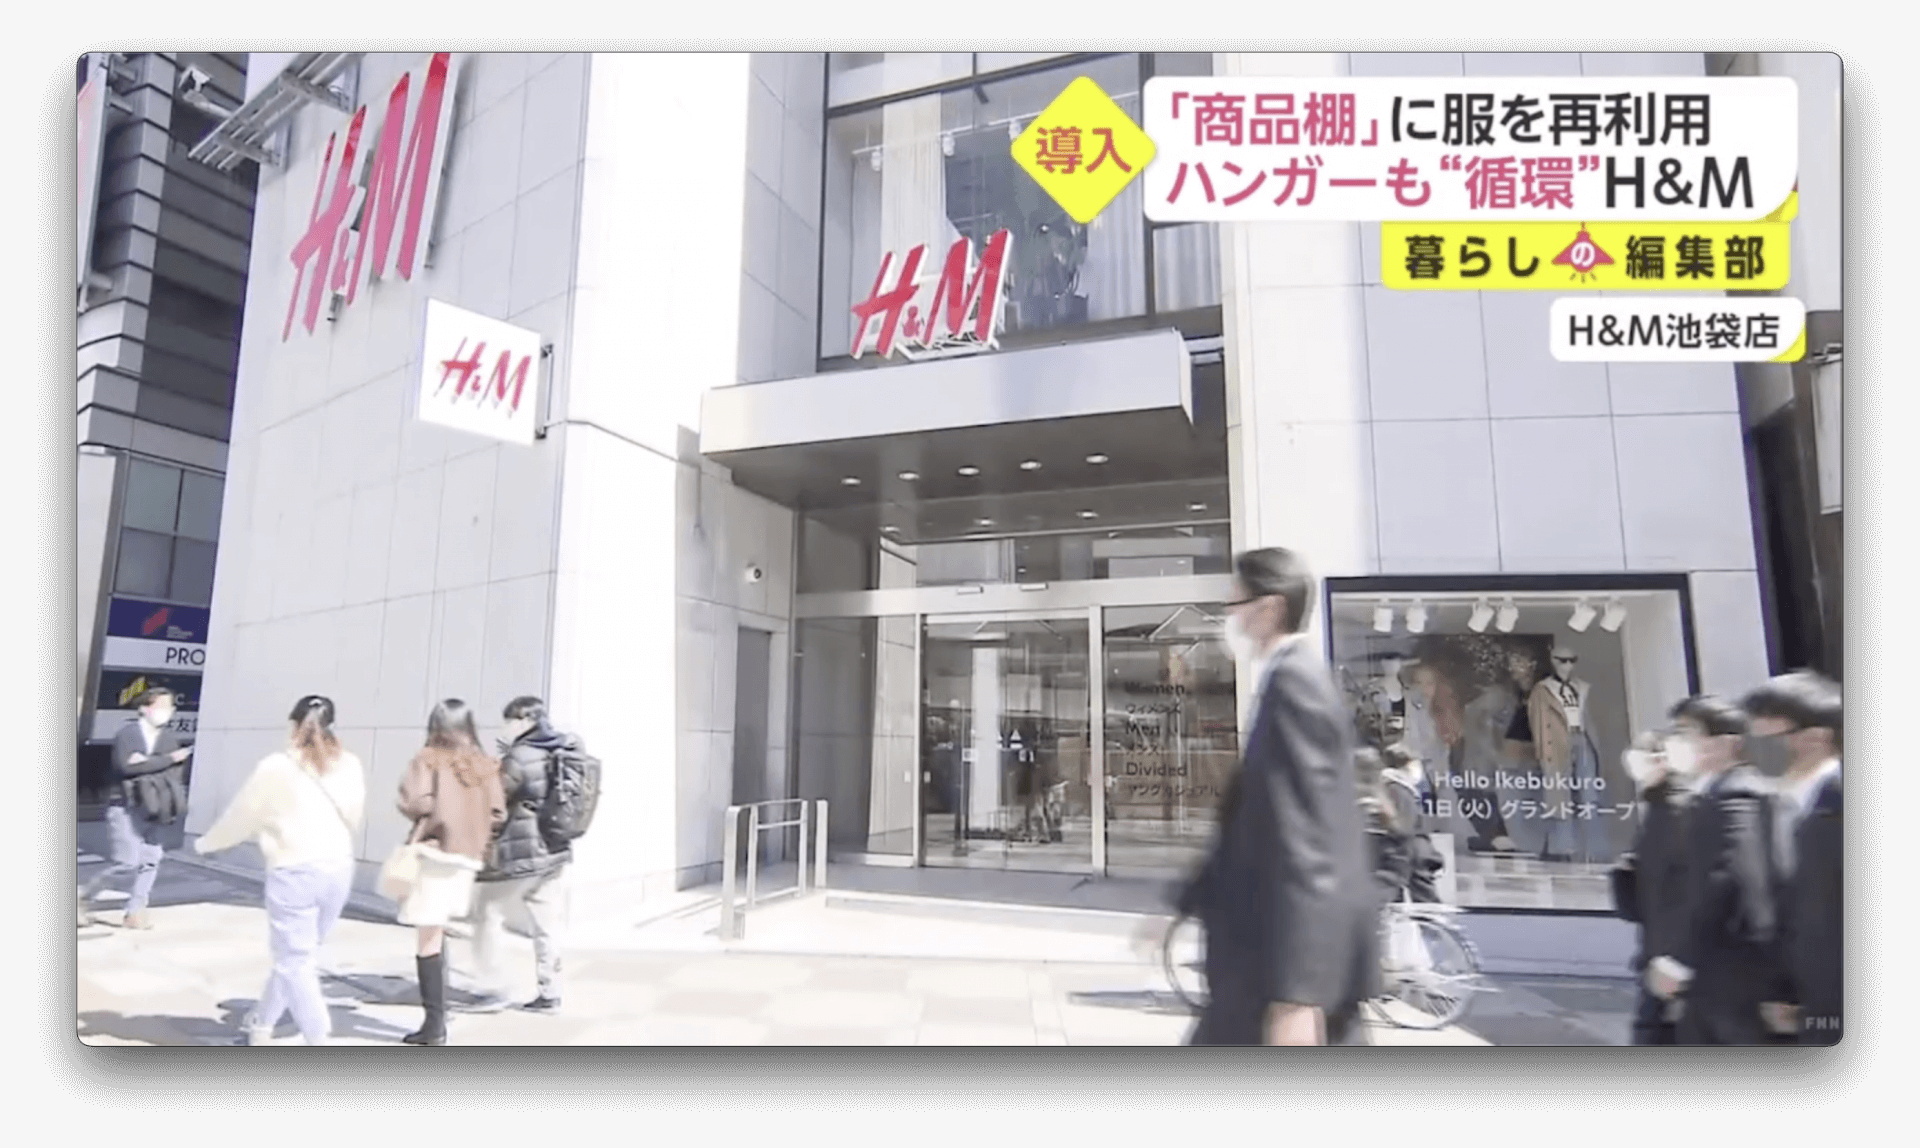 H&M apresenta sua forma de reciclar roupas no Japão